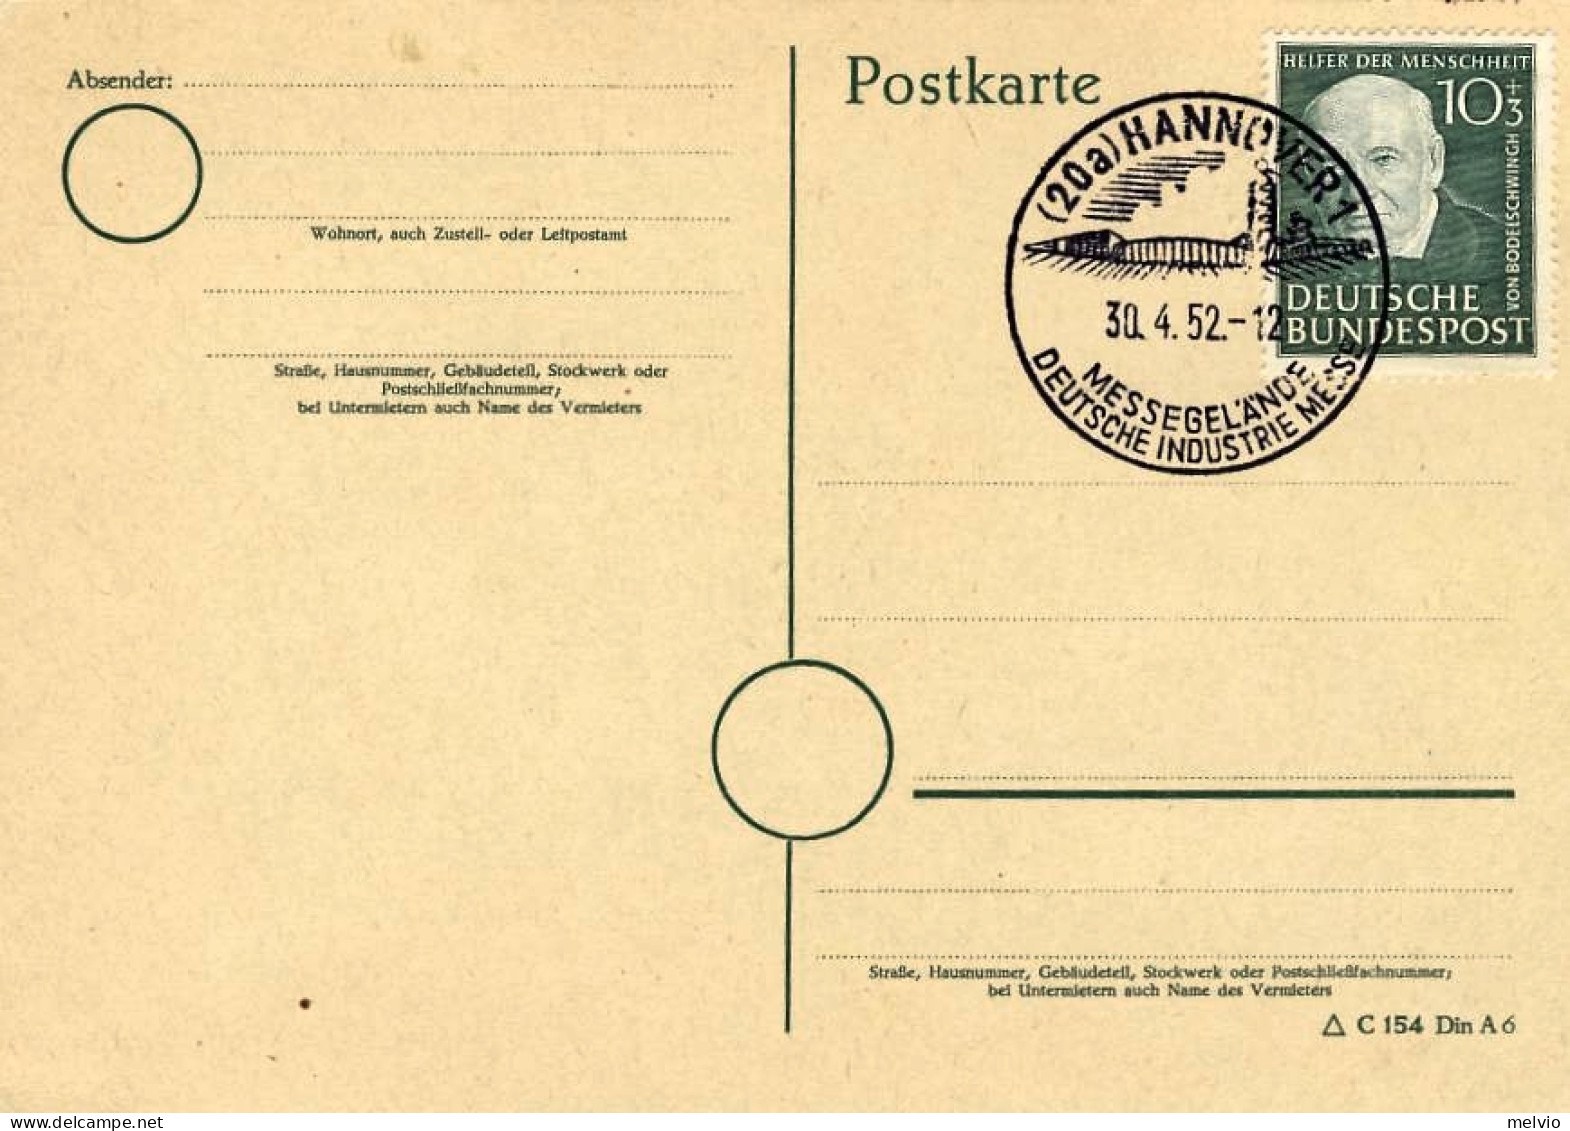 1952-Germania Cartolina Postale Affrancata 10+3p.Bodelschwing Annullo Della Fier - Storia Postale